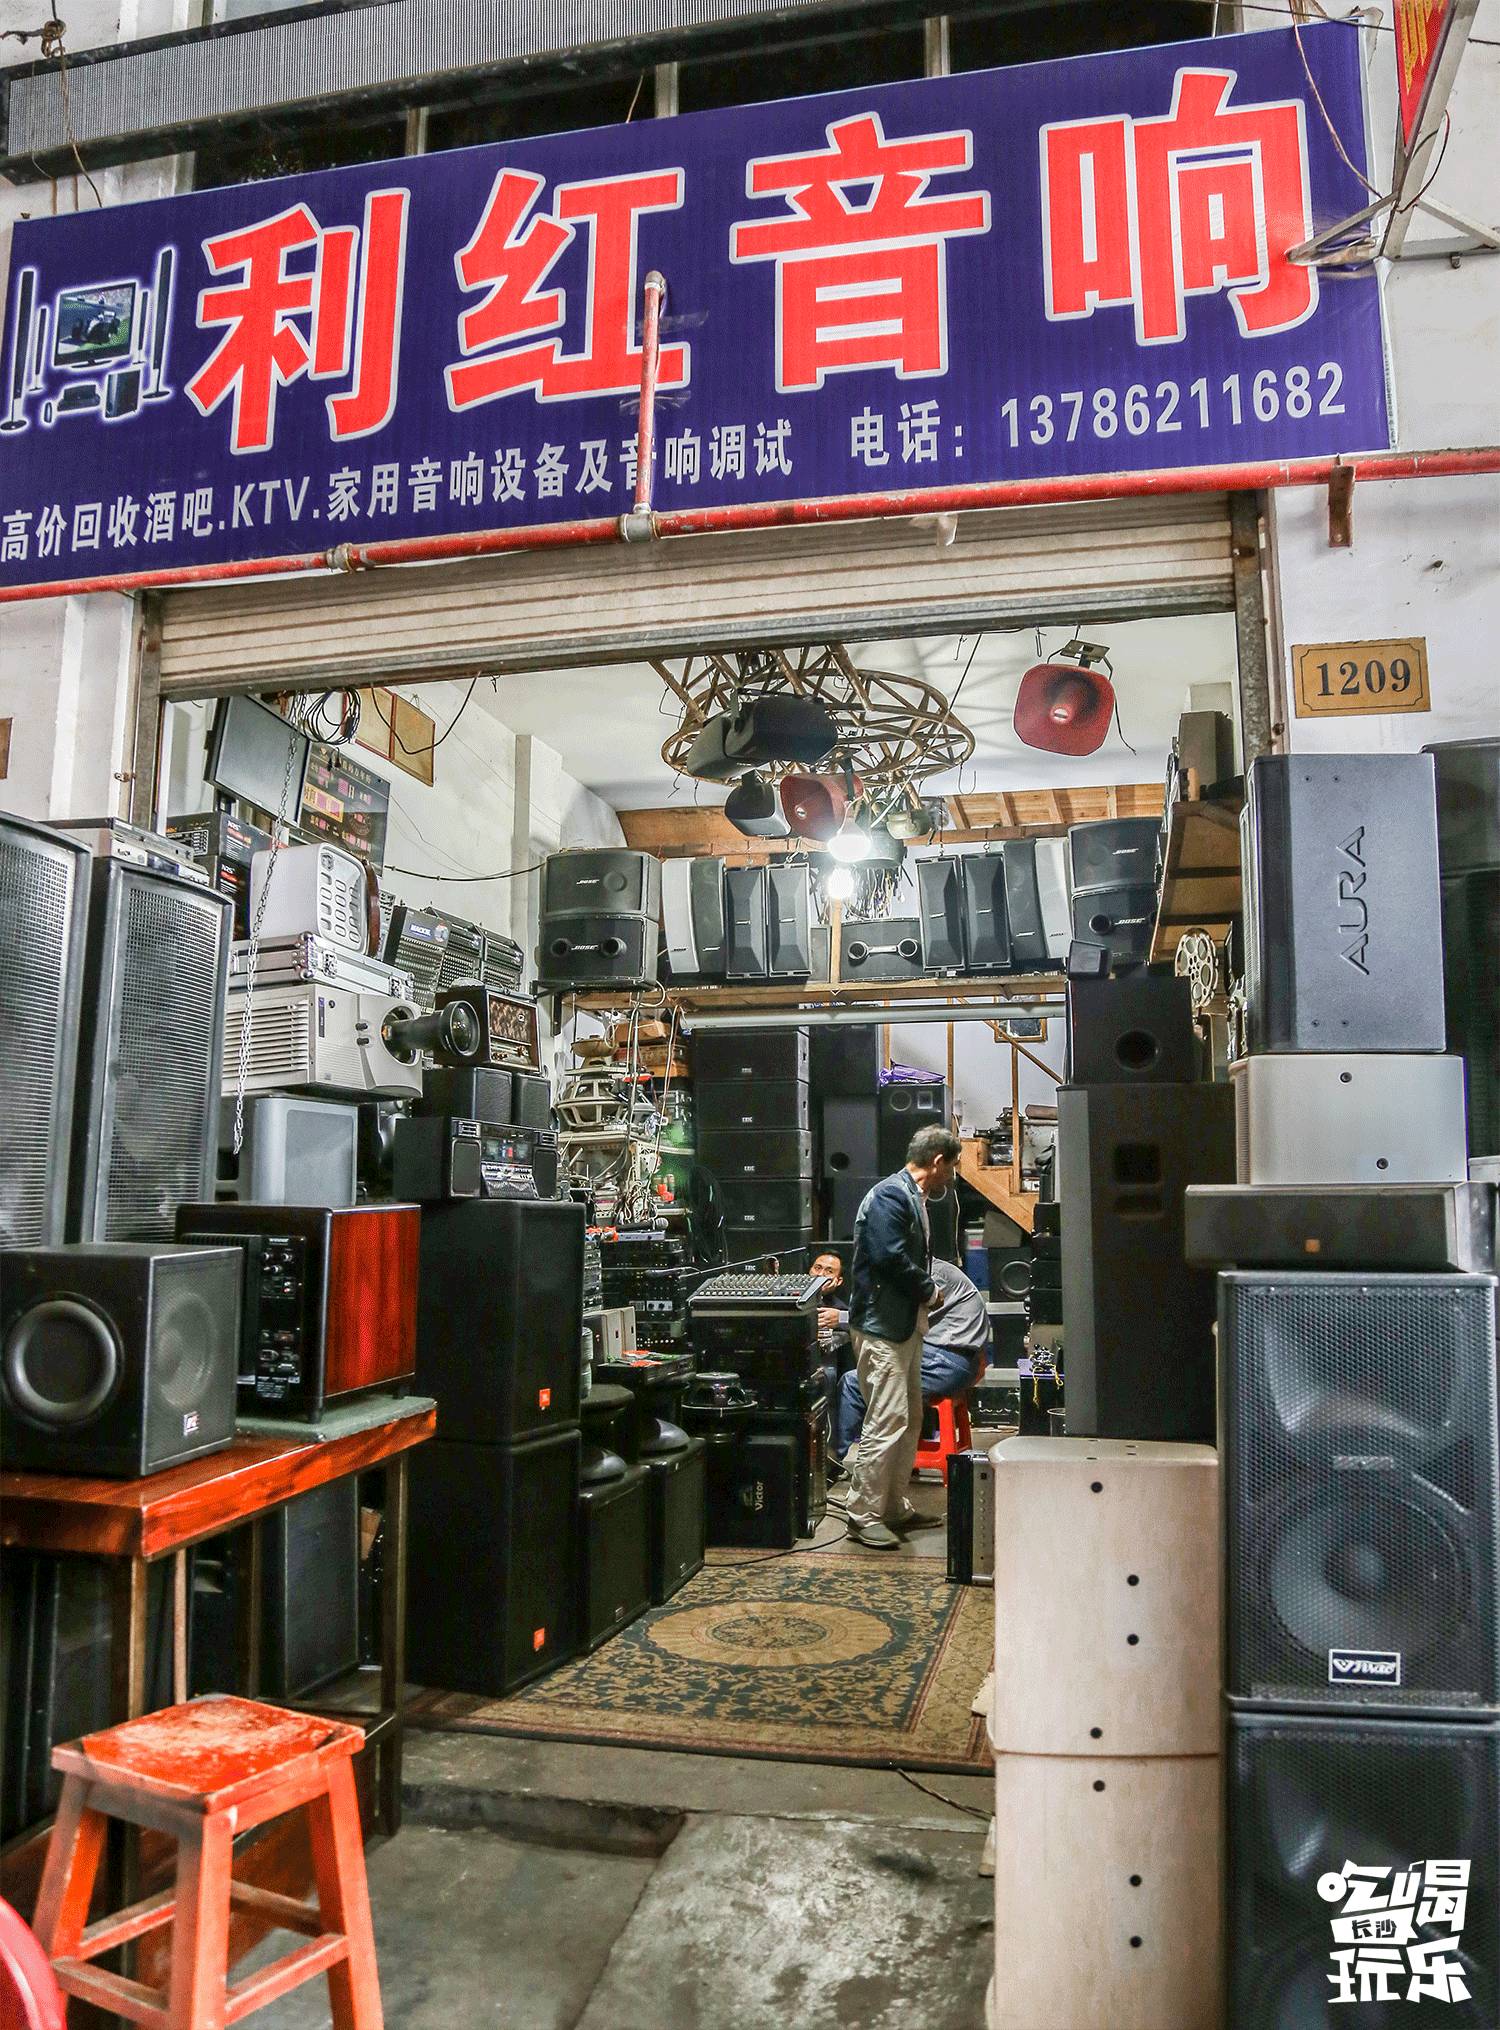 藏在四方旧货市场里的利红音响店,贩卖着几代人的青春